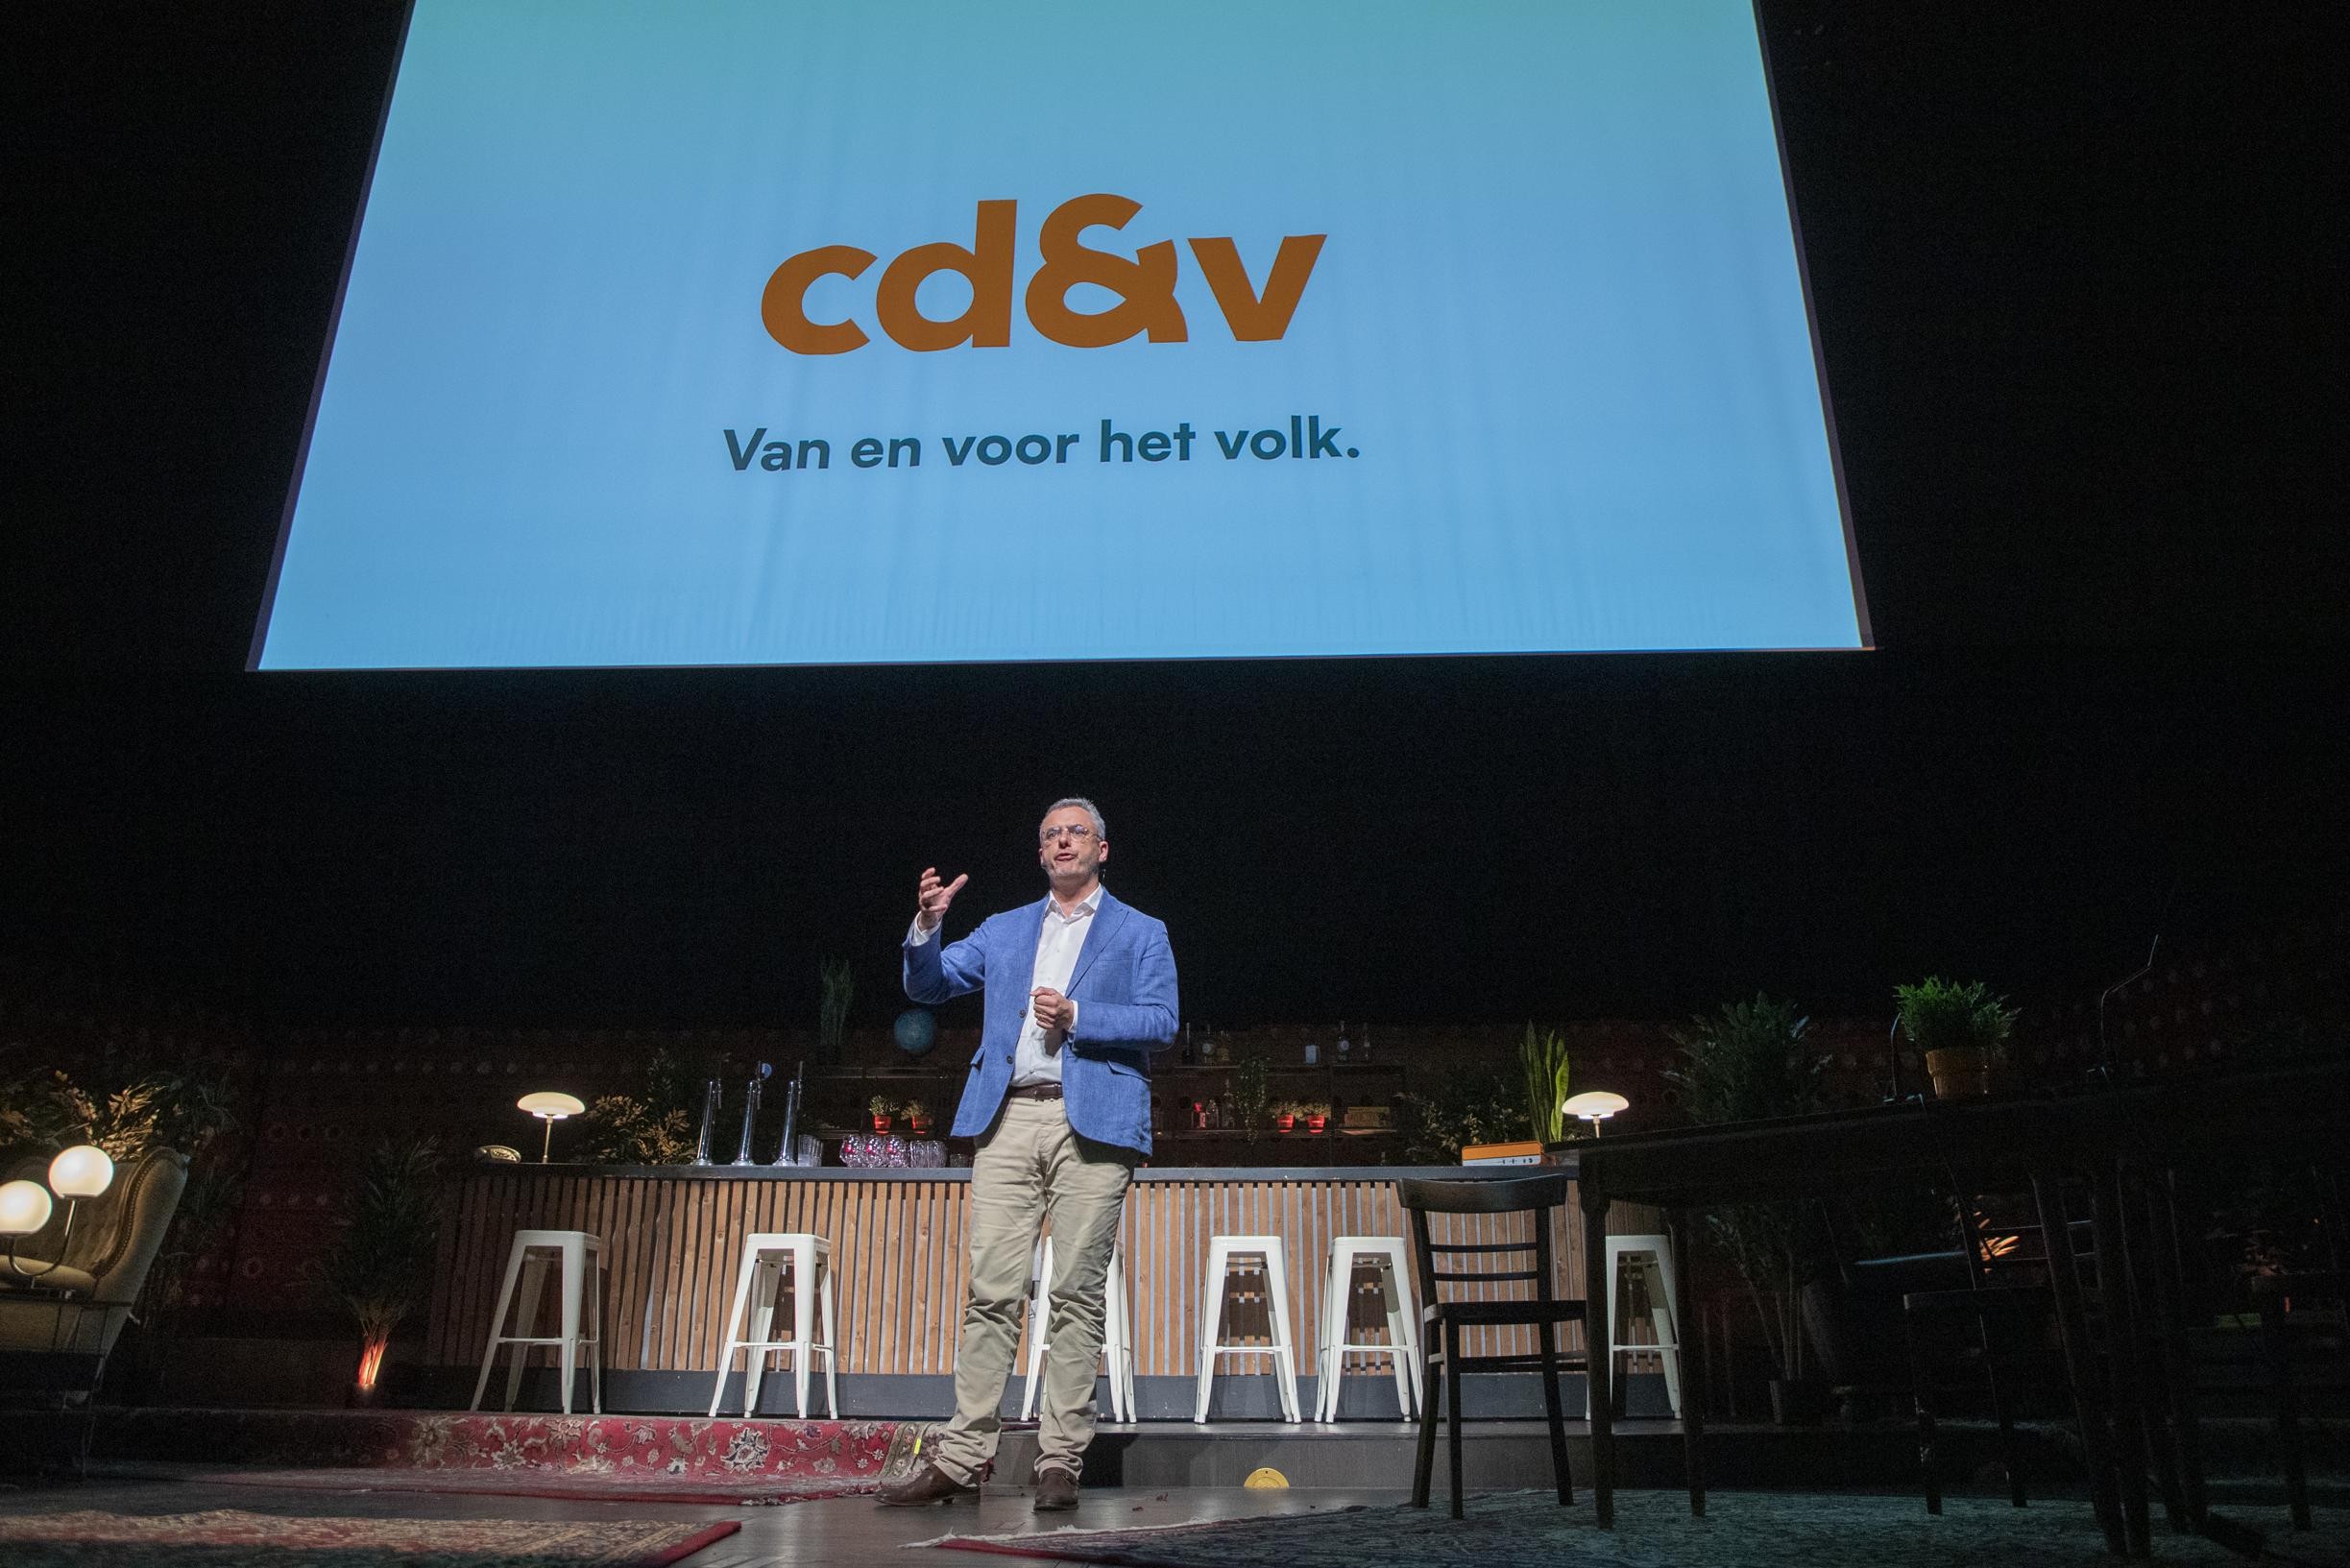 CD&V presenteert zich als “volkse centrumpartij” met nieuwe slagzin en nieuw logo